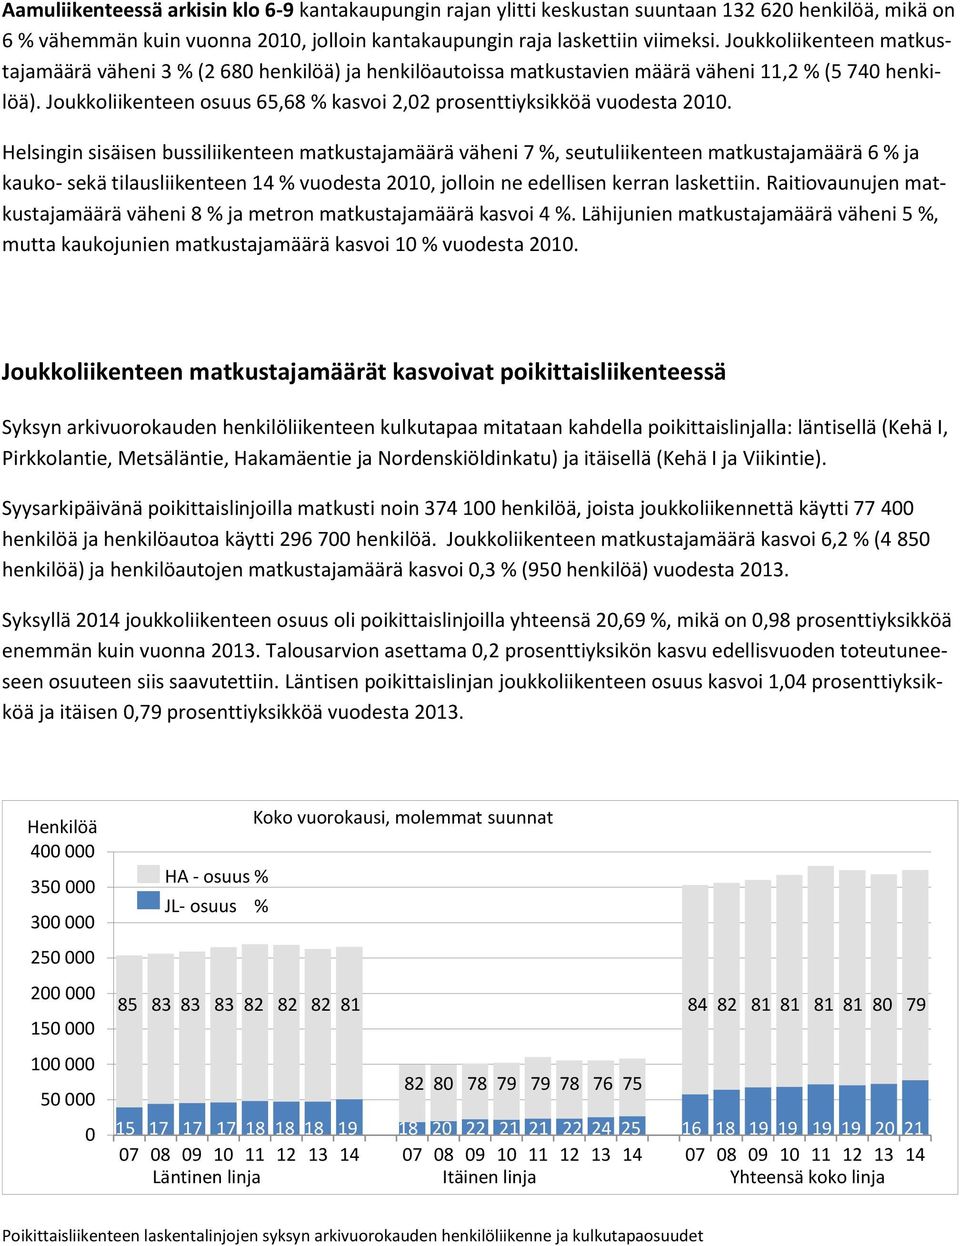 Helsingin sisäisen bussiliikenteen matkustajamäärä väheni 7, seutuliikenteen matkustajamäärä 6 ja kauko- sekä tilausliikenteen 14 vuodesta 21, jolloin ne edellisen kerran laskettiin.